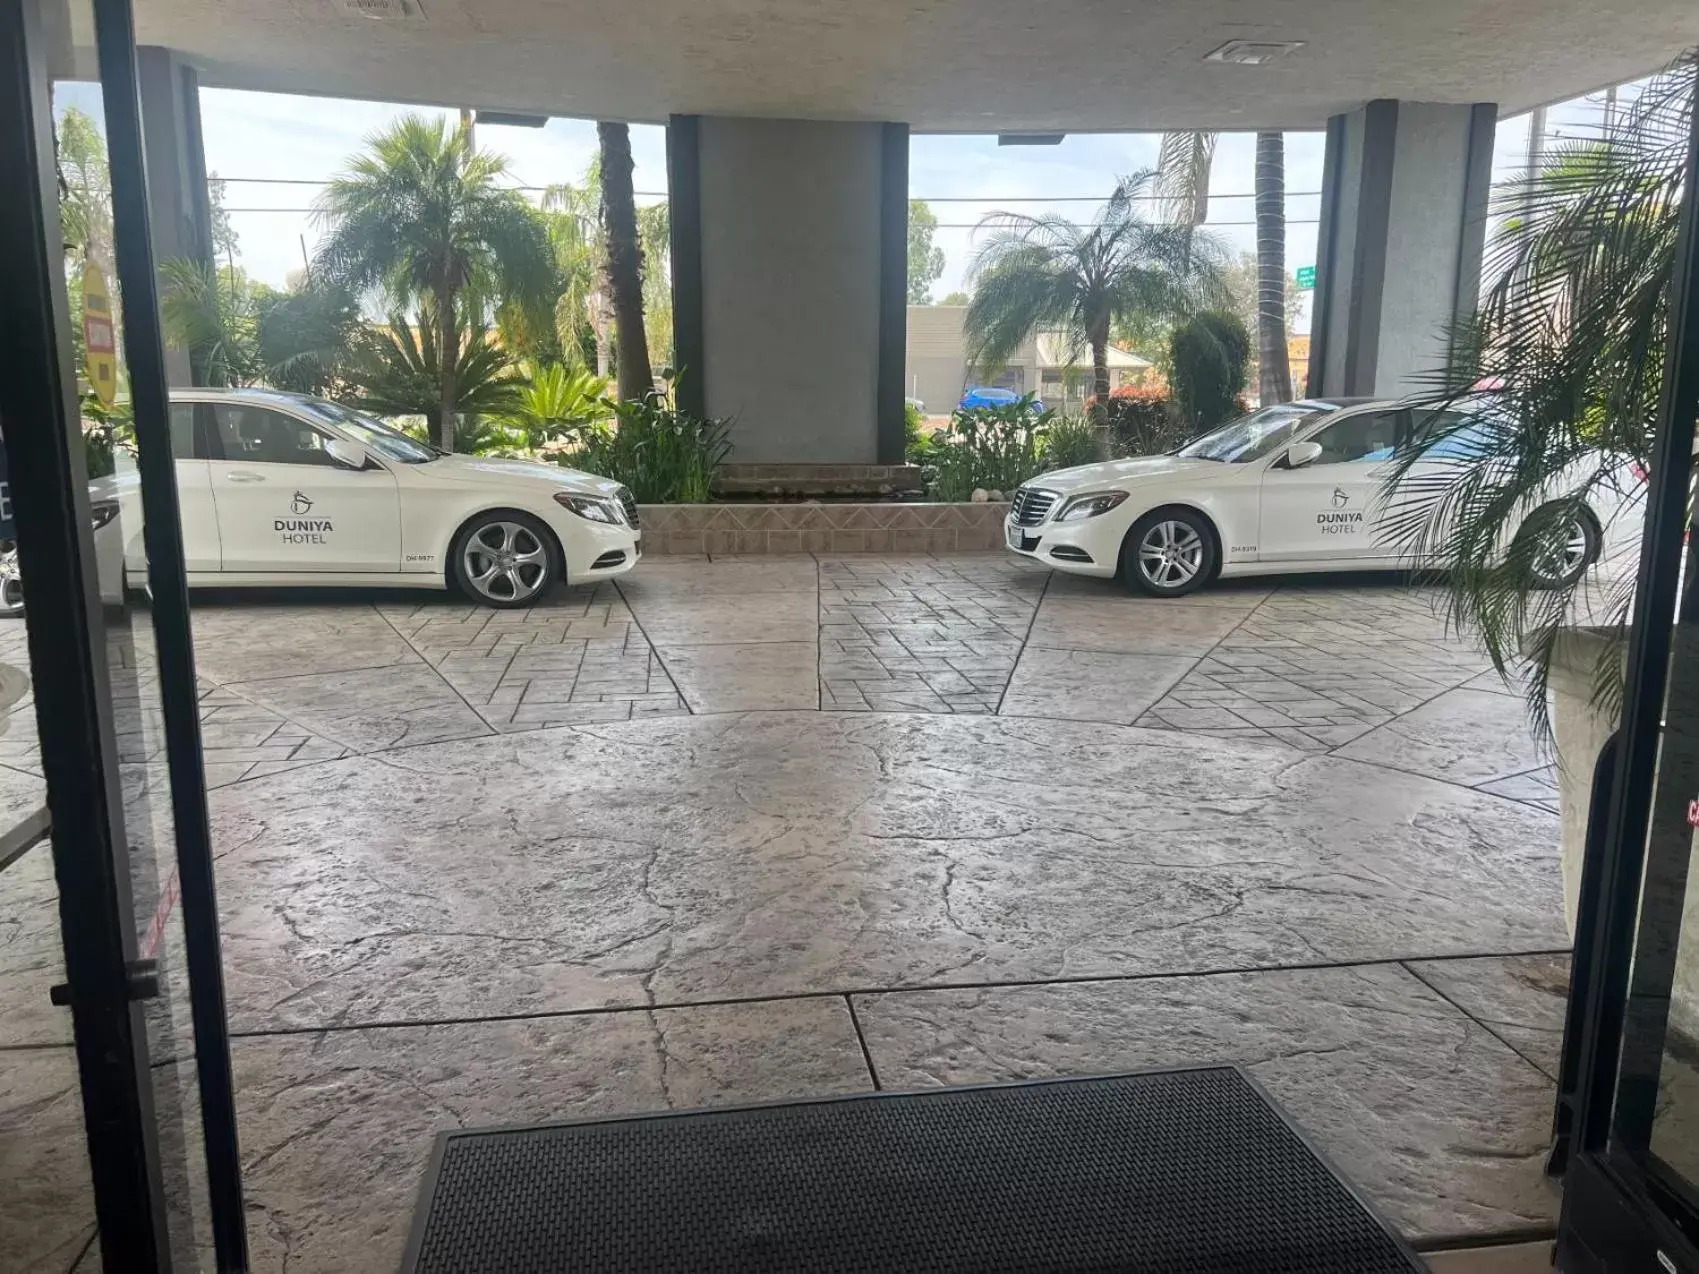 Lobby or reception in Duniya Hotel